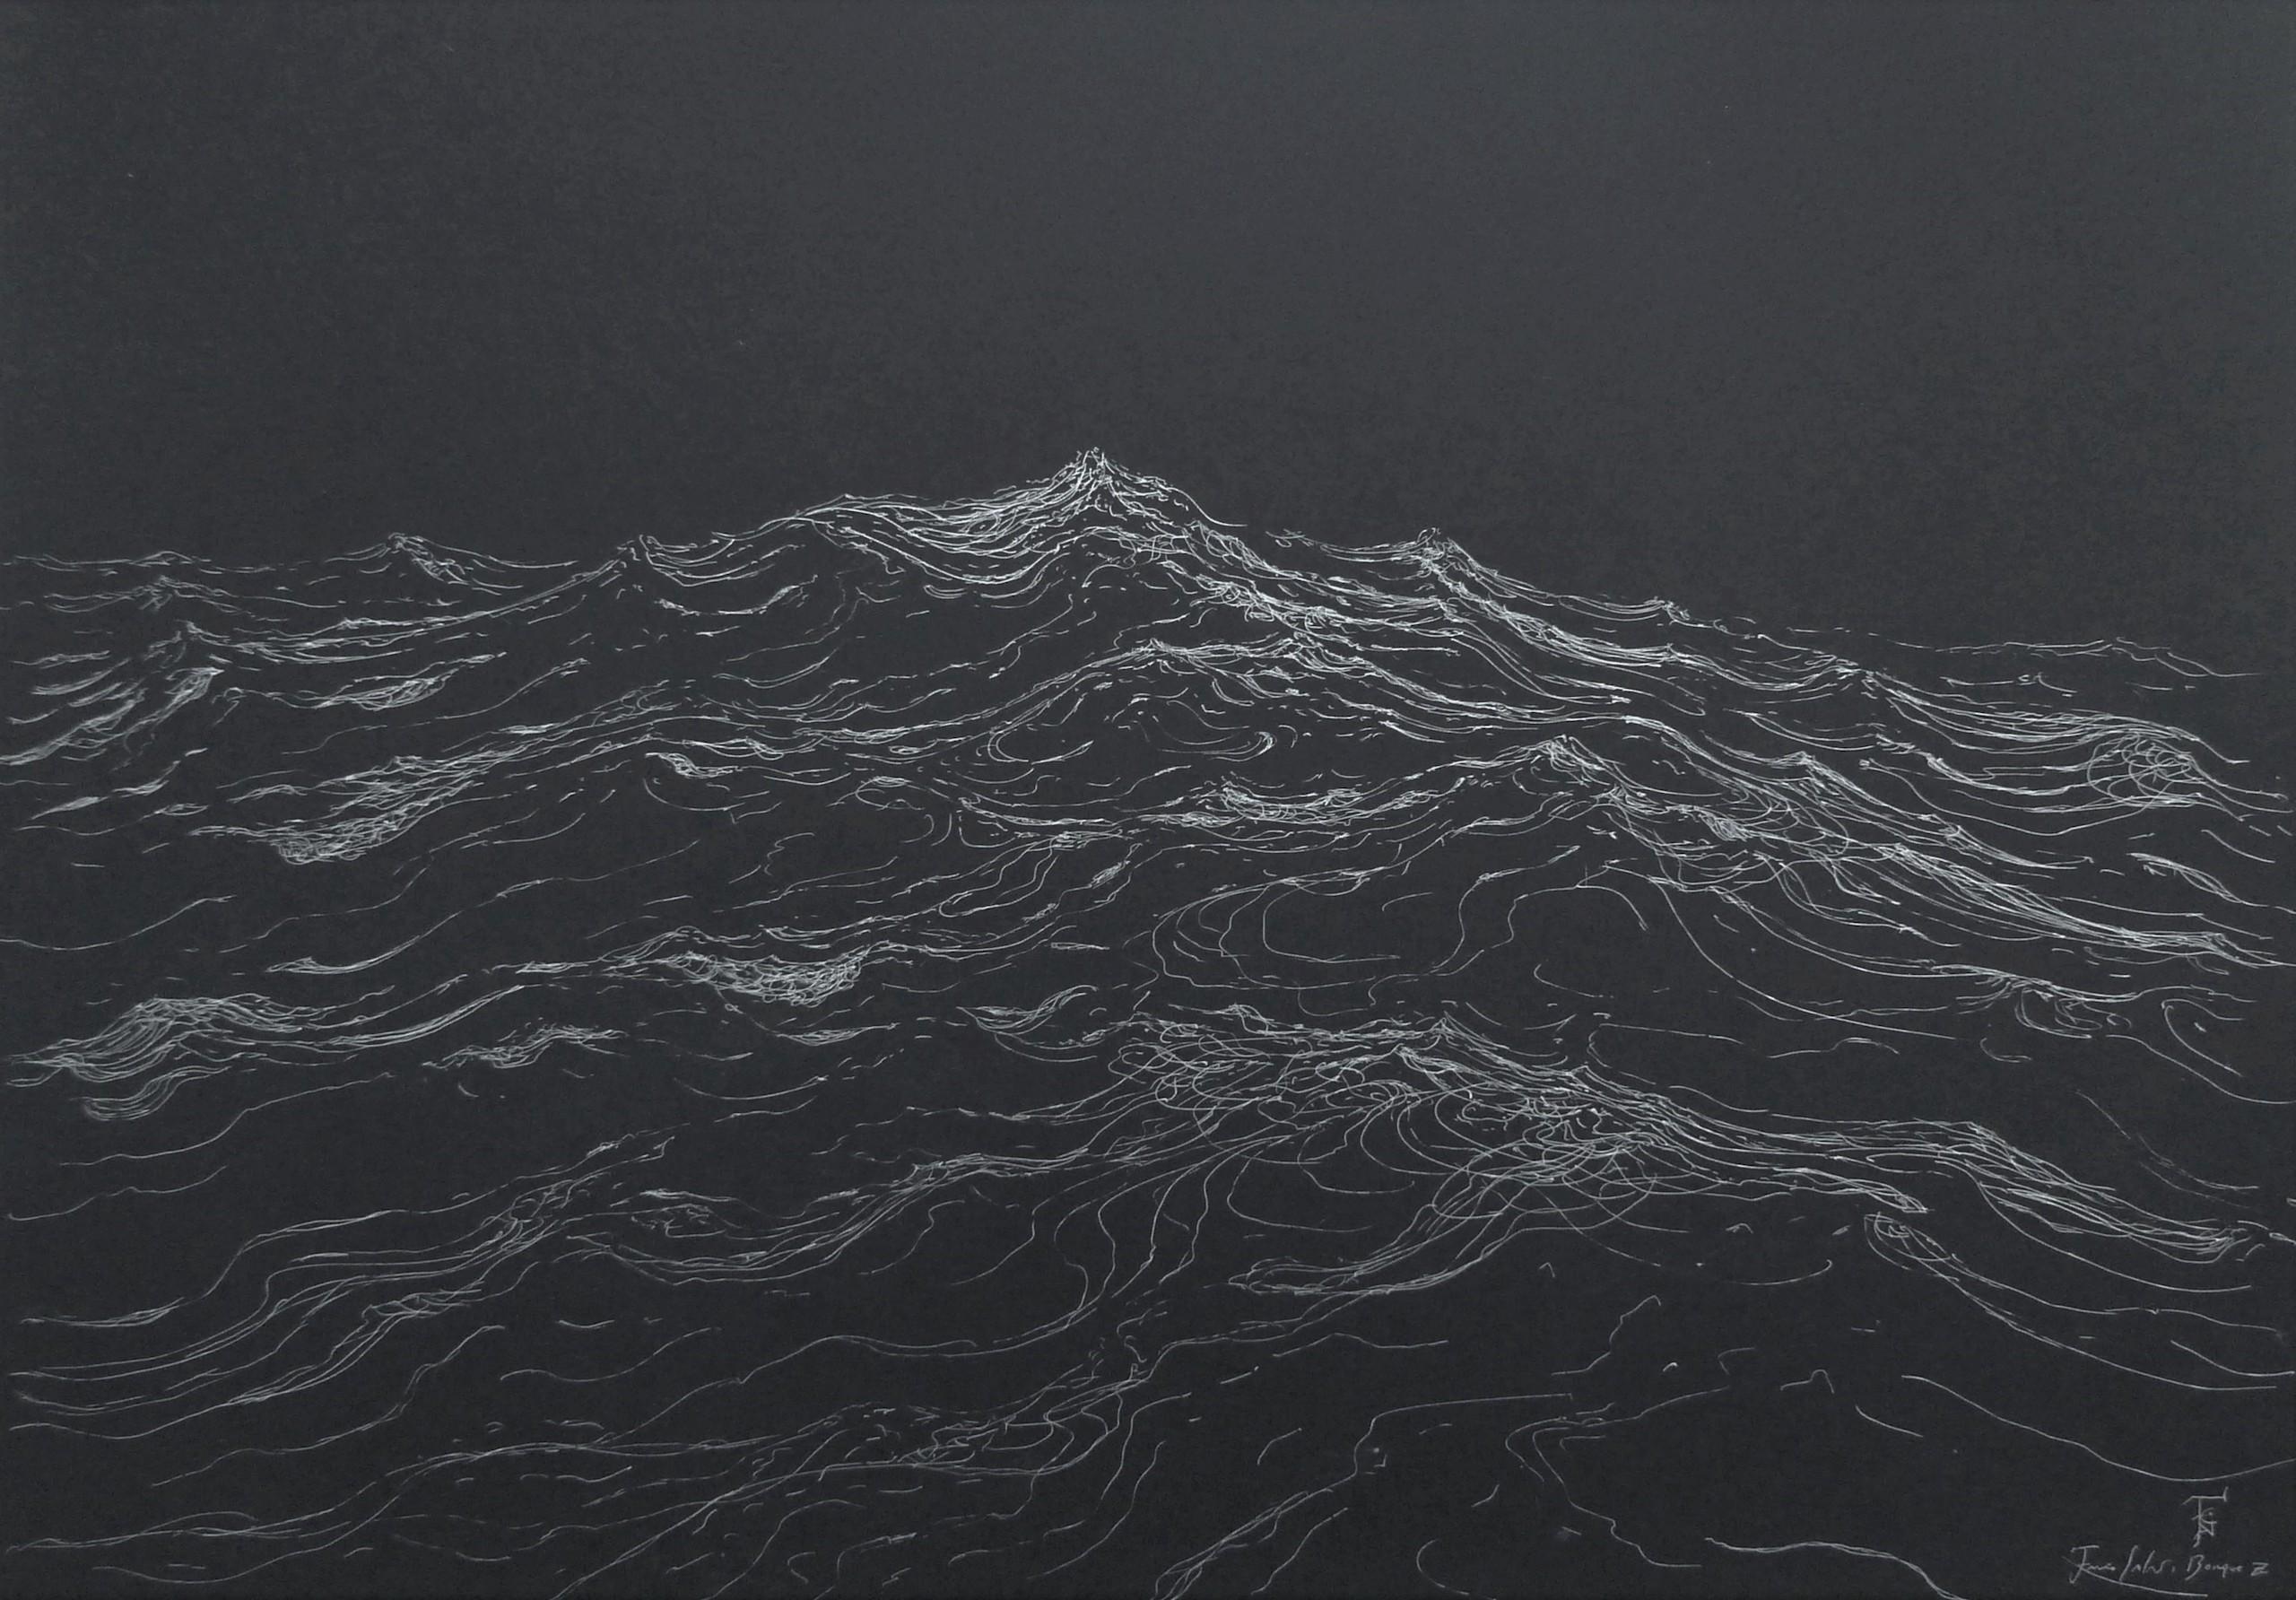 Extreme currents est une peinture unique à l'encre argentée sur papier Canson de l'artiste contemporain Franco Salas Borquez, dont les dimensions sont de 50 × 70 cm (19,7 x 27,6 in). Elle est vendue encadrée sous un verre antireflet et les